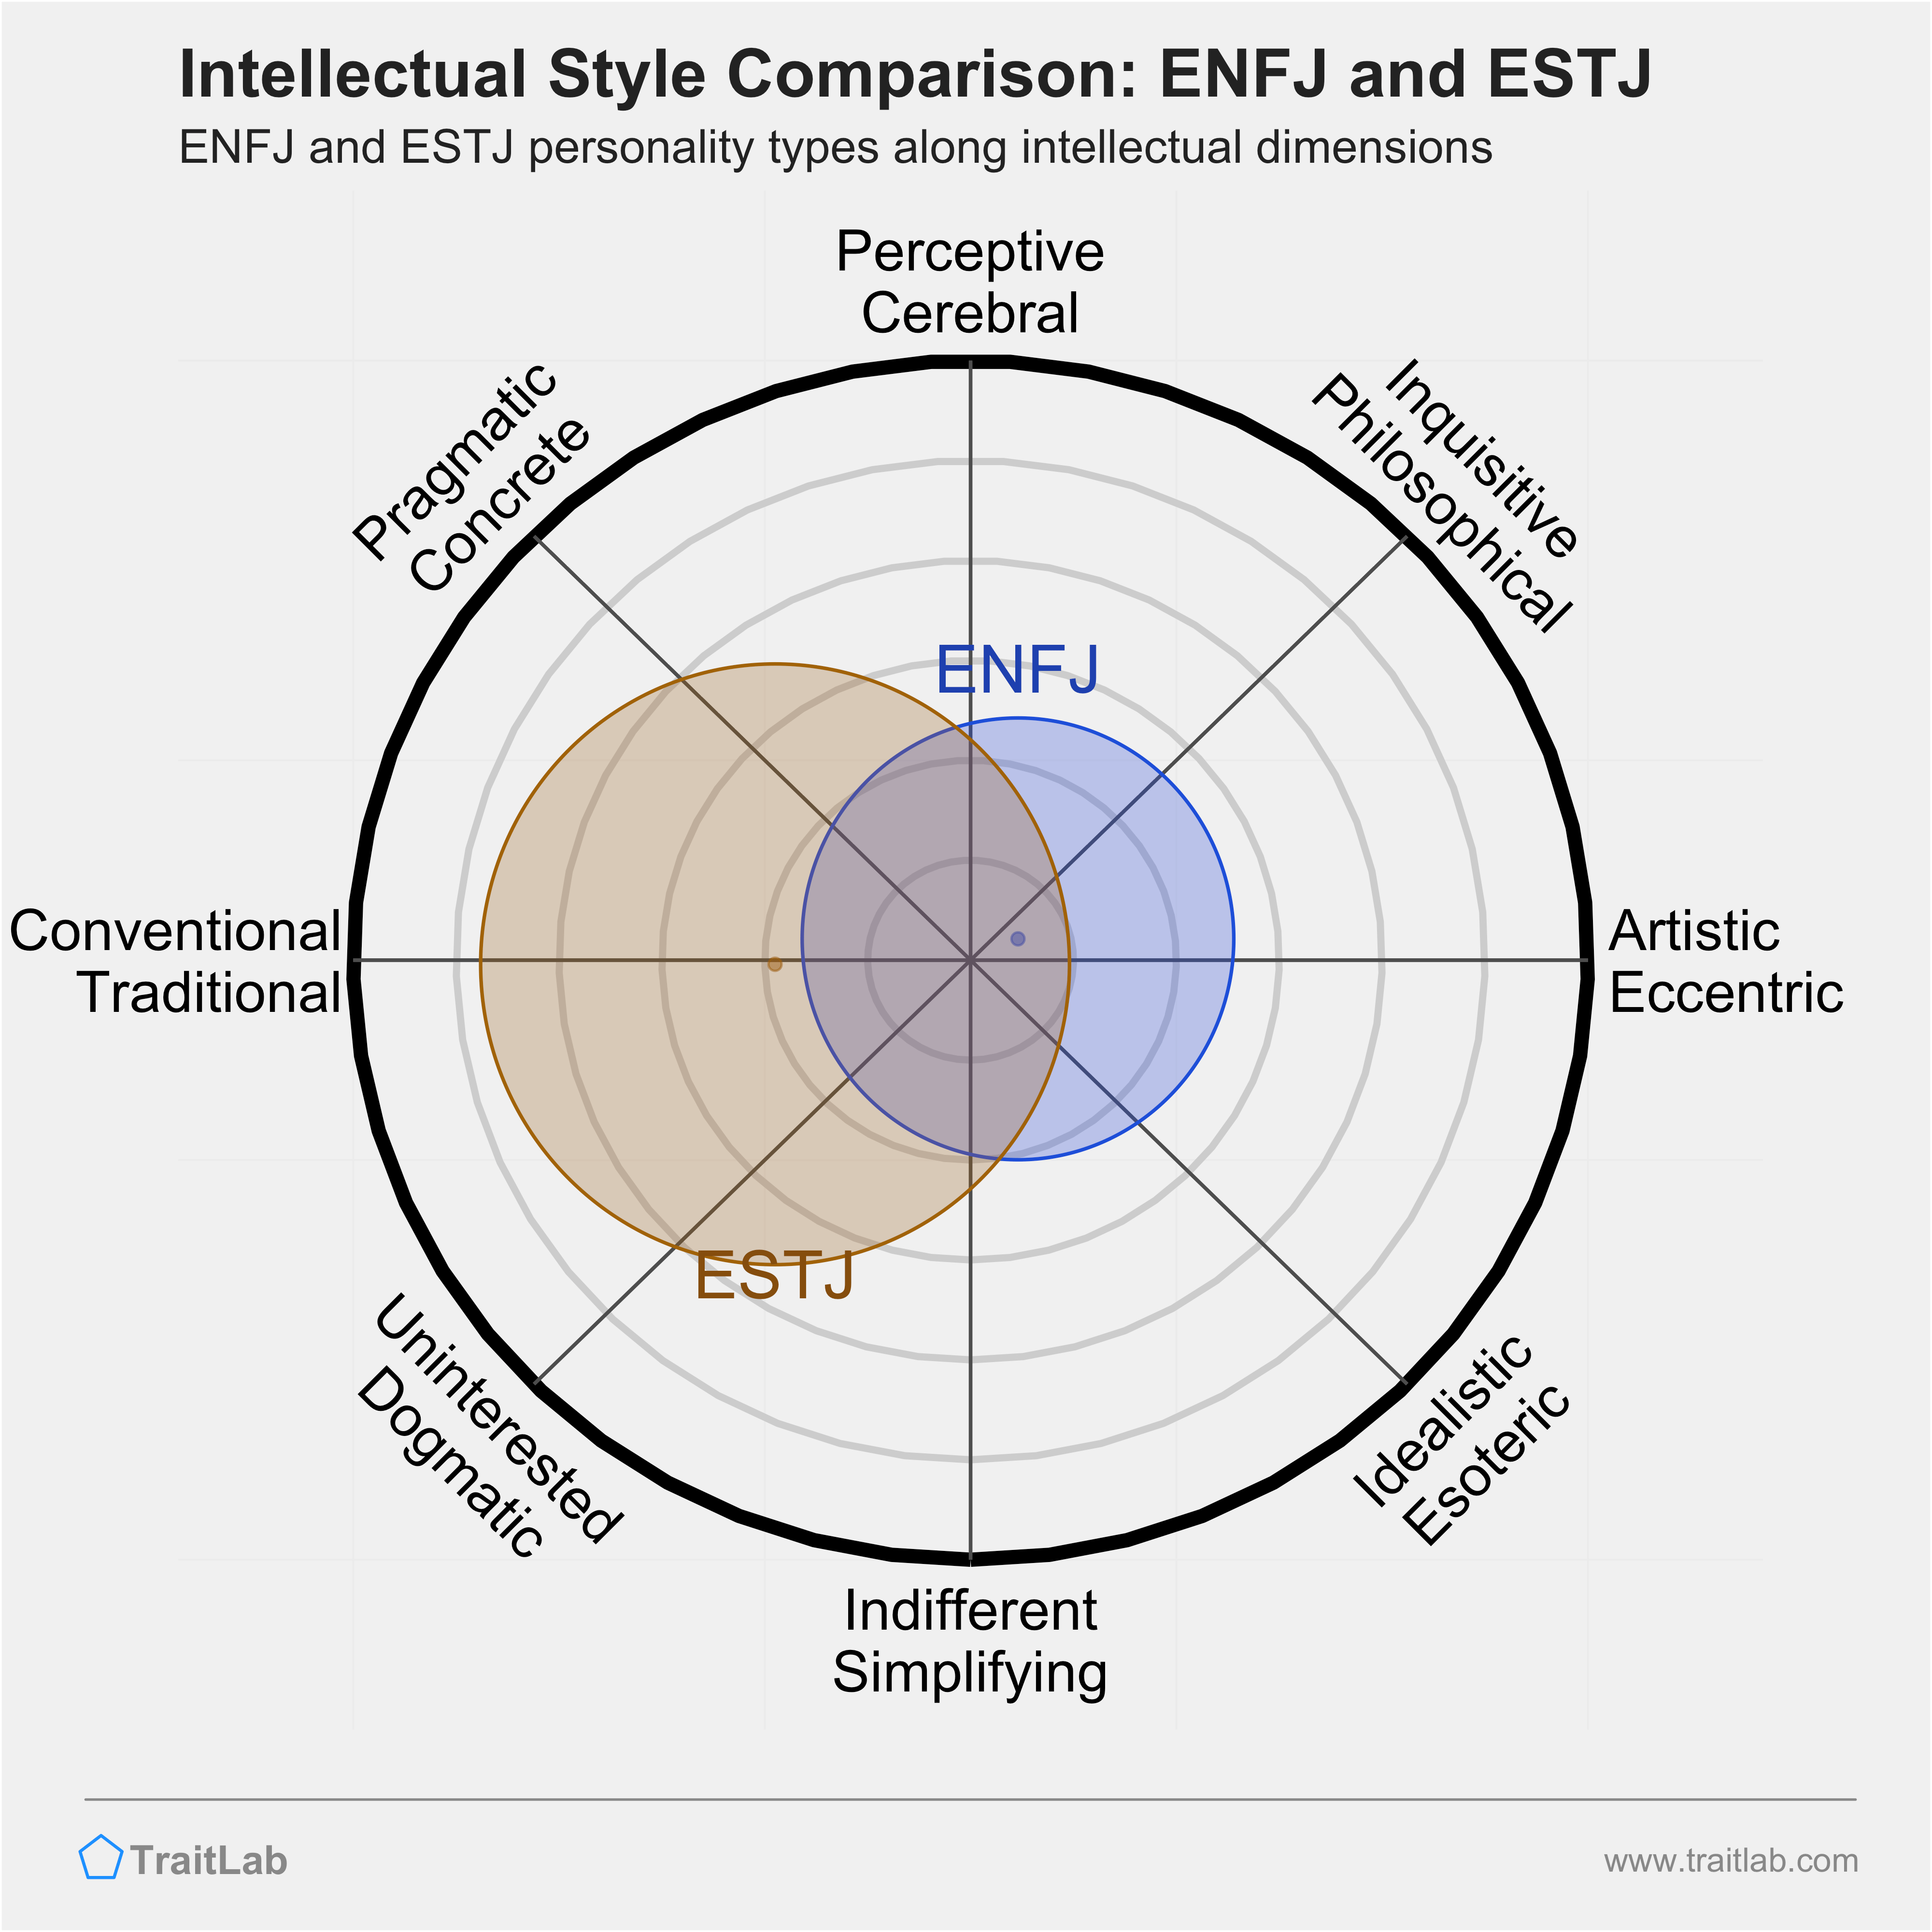 ENFJ and ESTJ comparison across intellectual dimensions